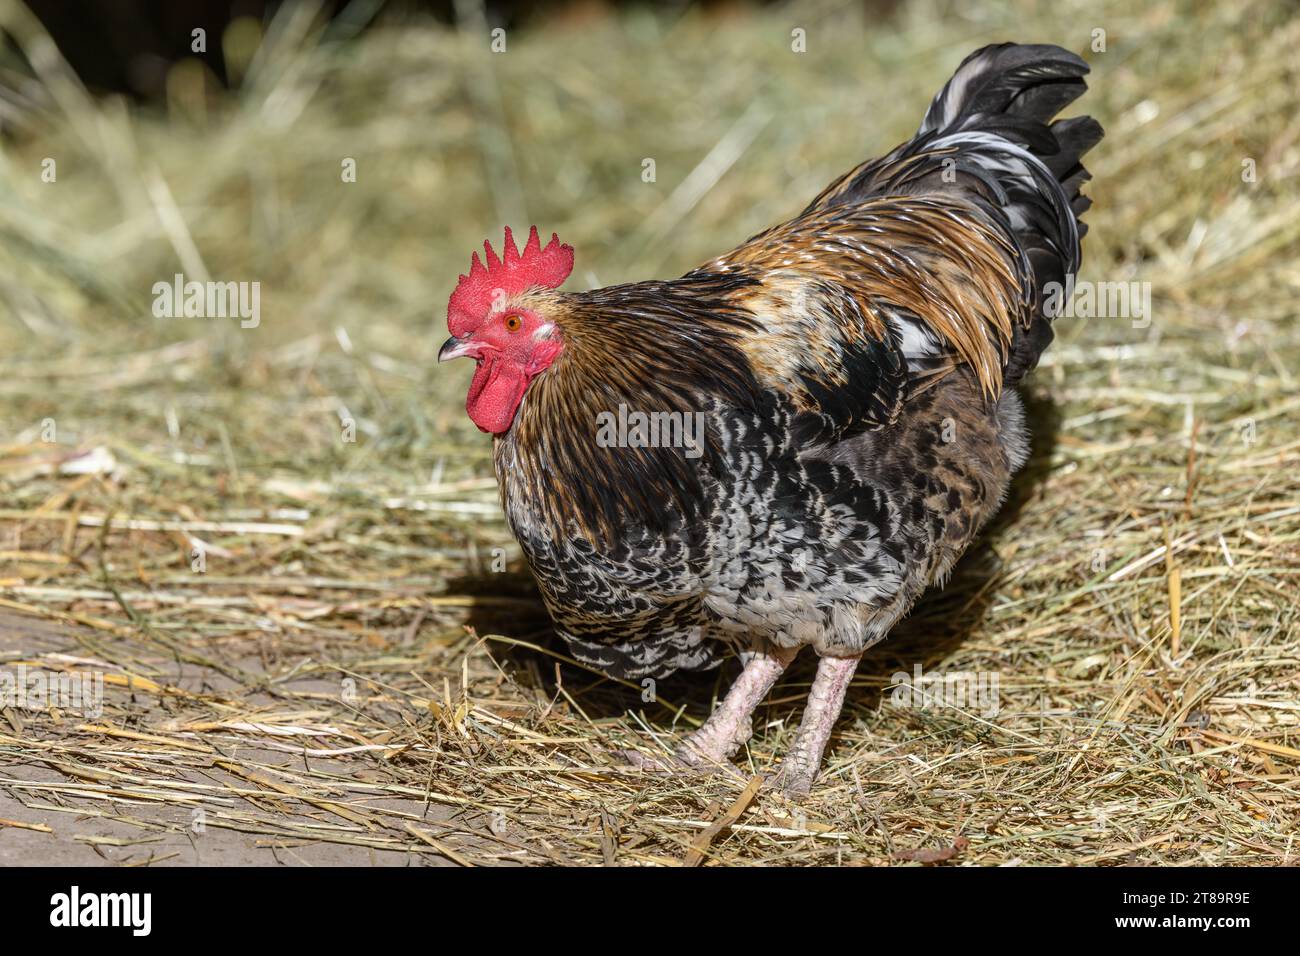 Coq de Barnyard en liberté avec plumage coloré, élevage en plein air. Bas-Rhin, Collectivite européenne d'Alsace,Grand est, France, Europe. Banque D'Images